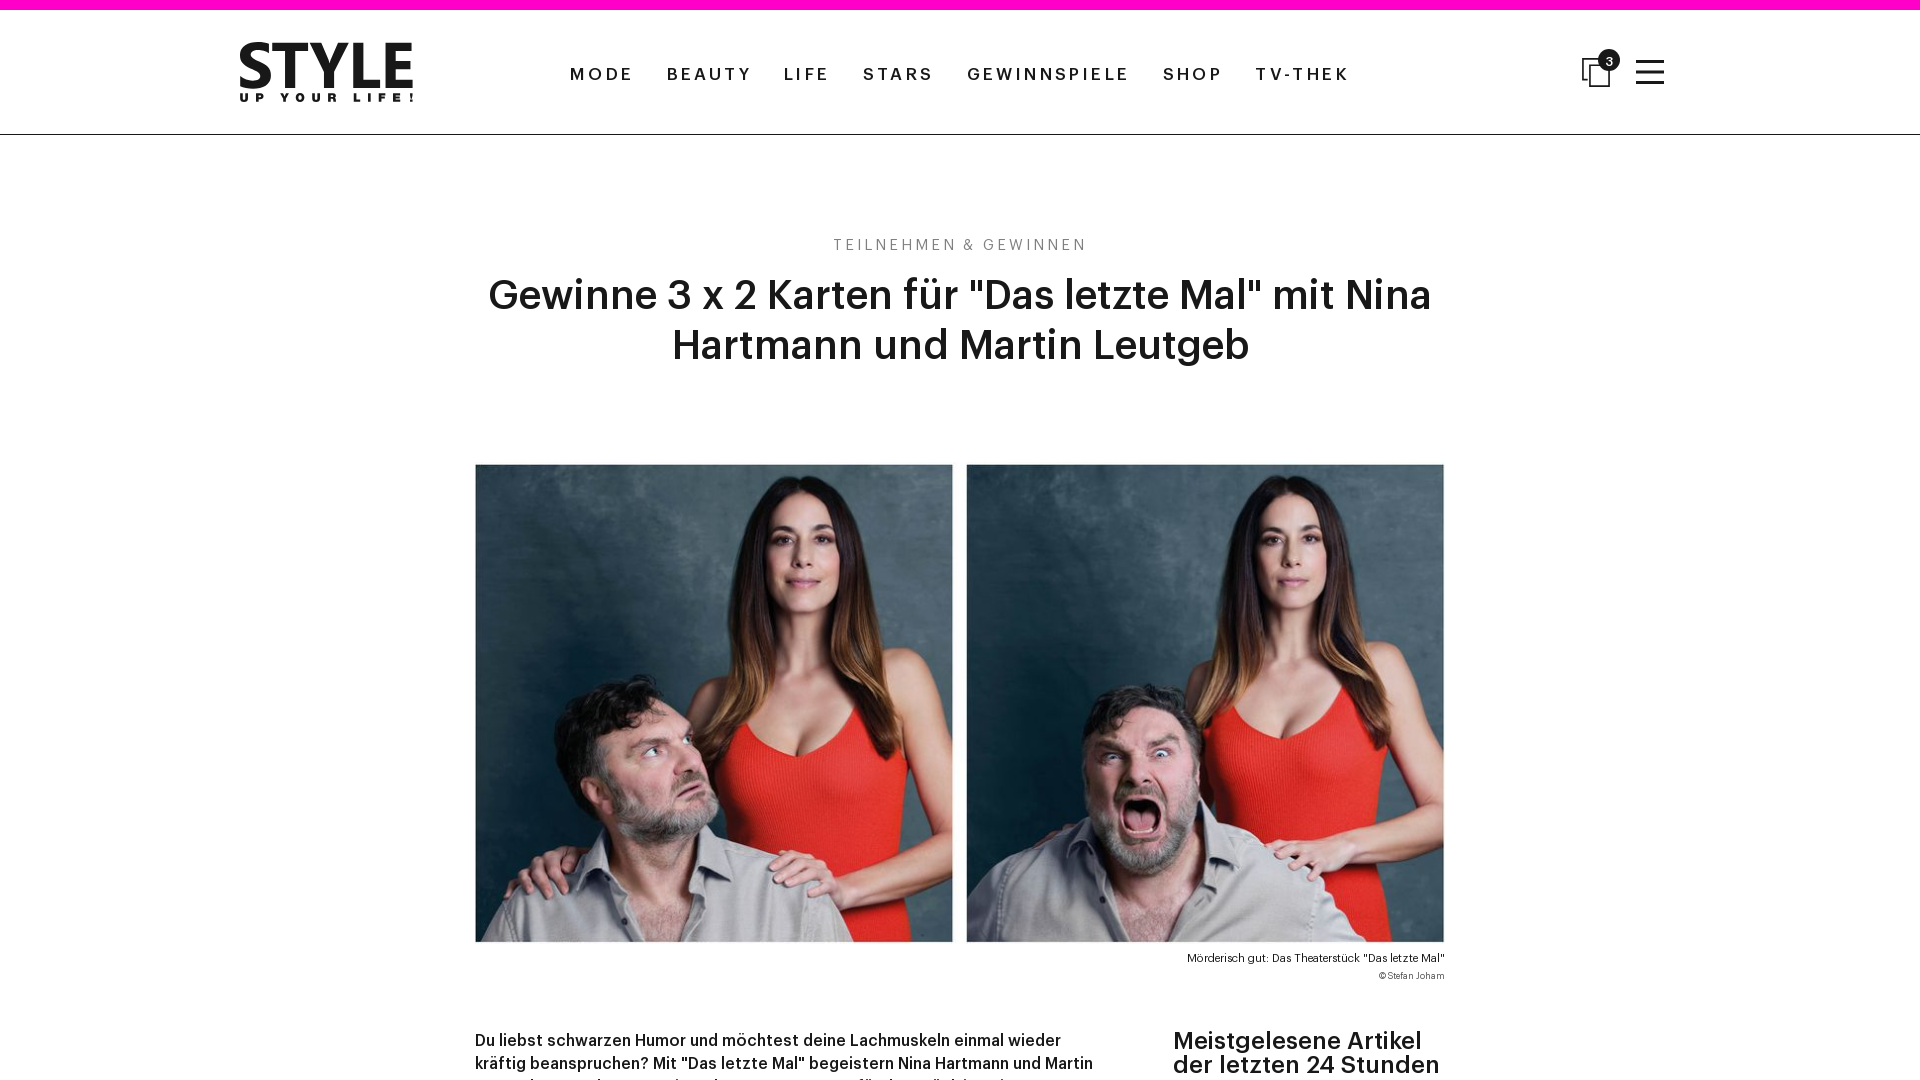 3 x 2 Karten für Das letzte Mal mit Nina Hartmann und Martin Leutgeb